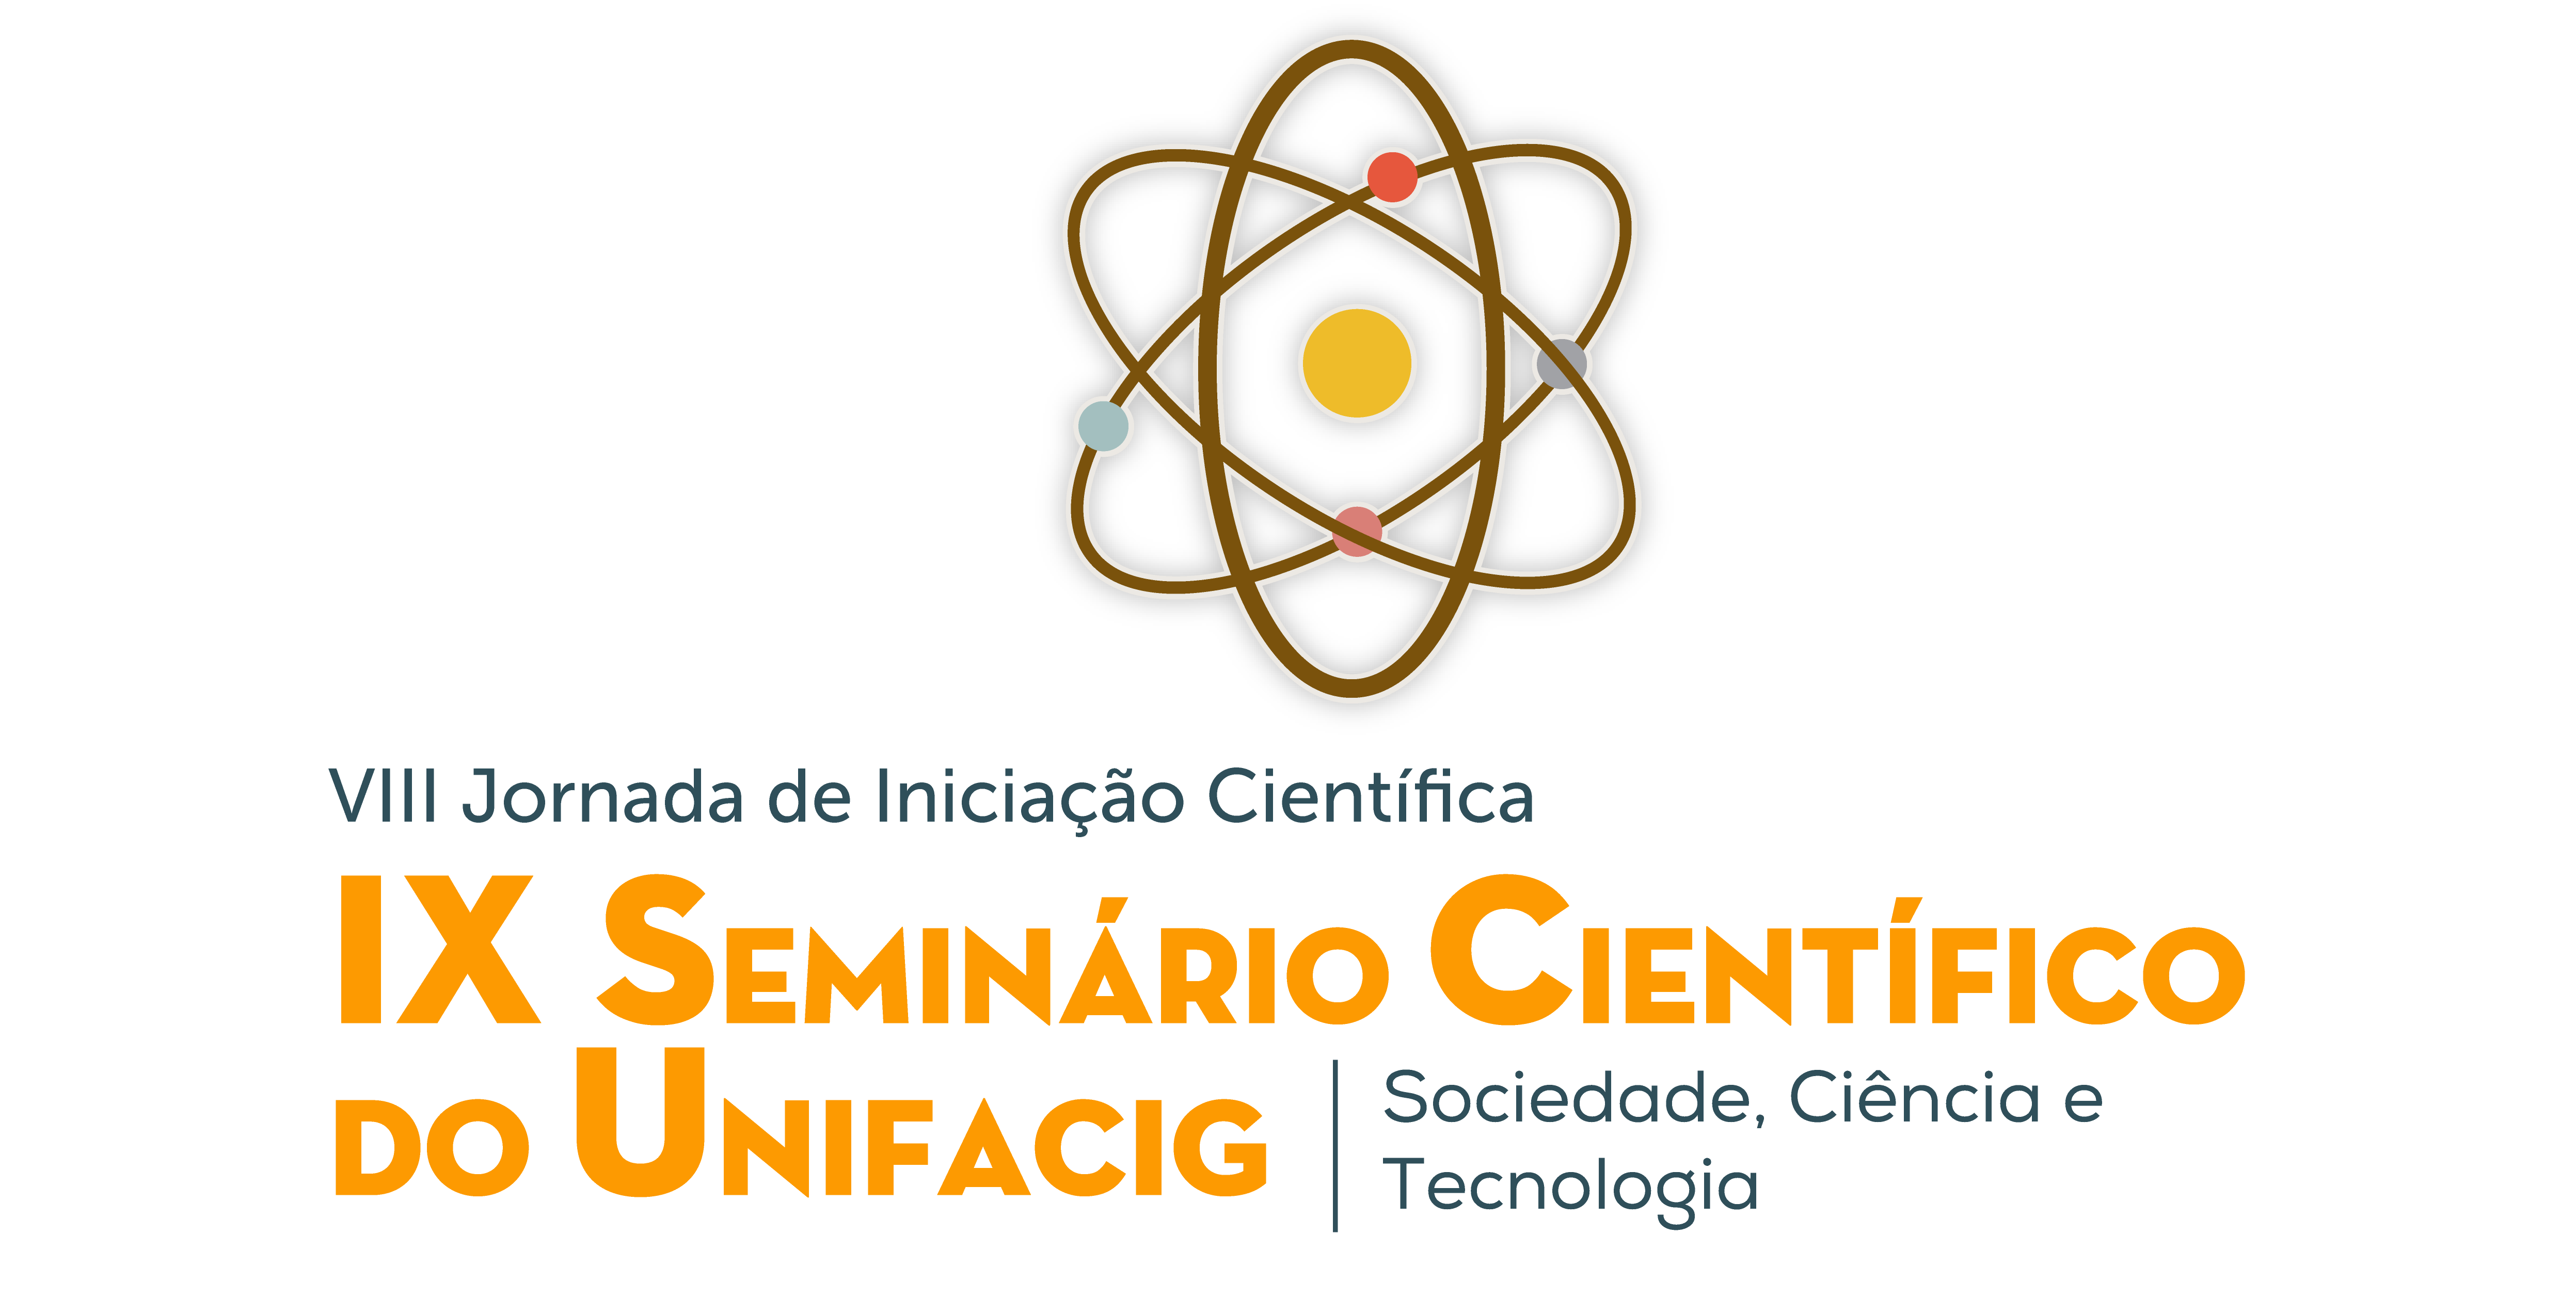 IX Seminário Científico UNIFACIG